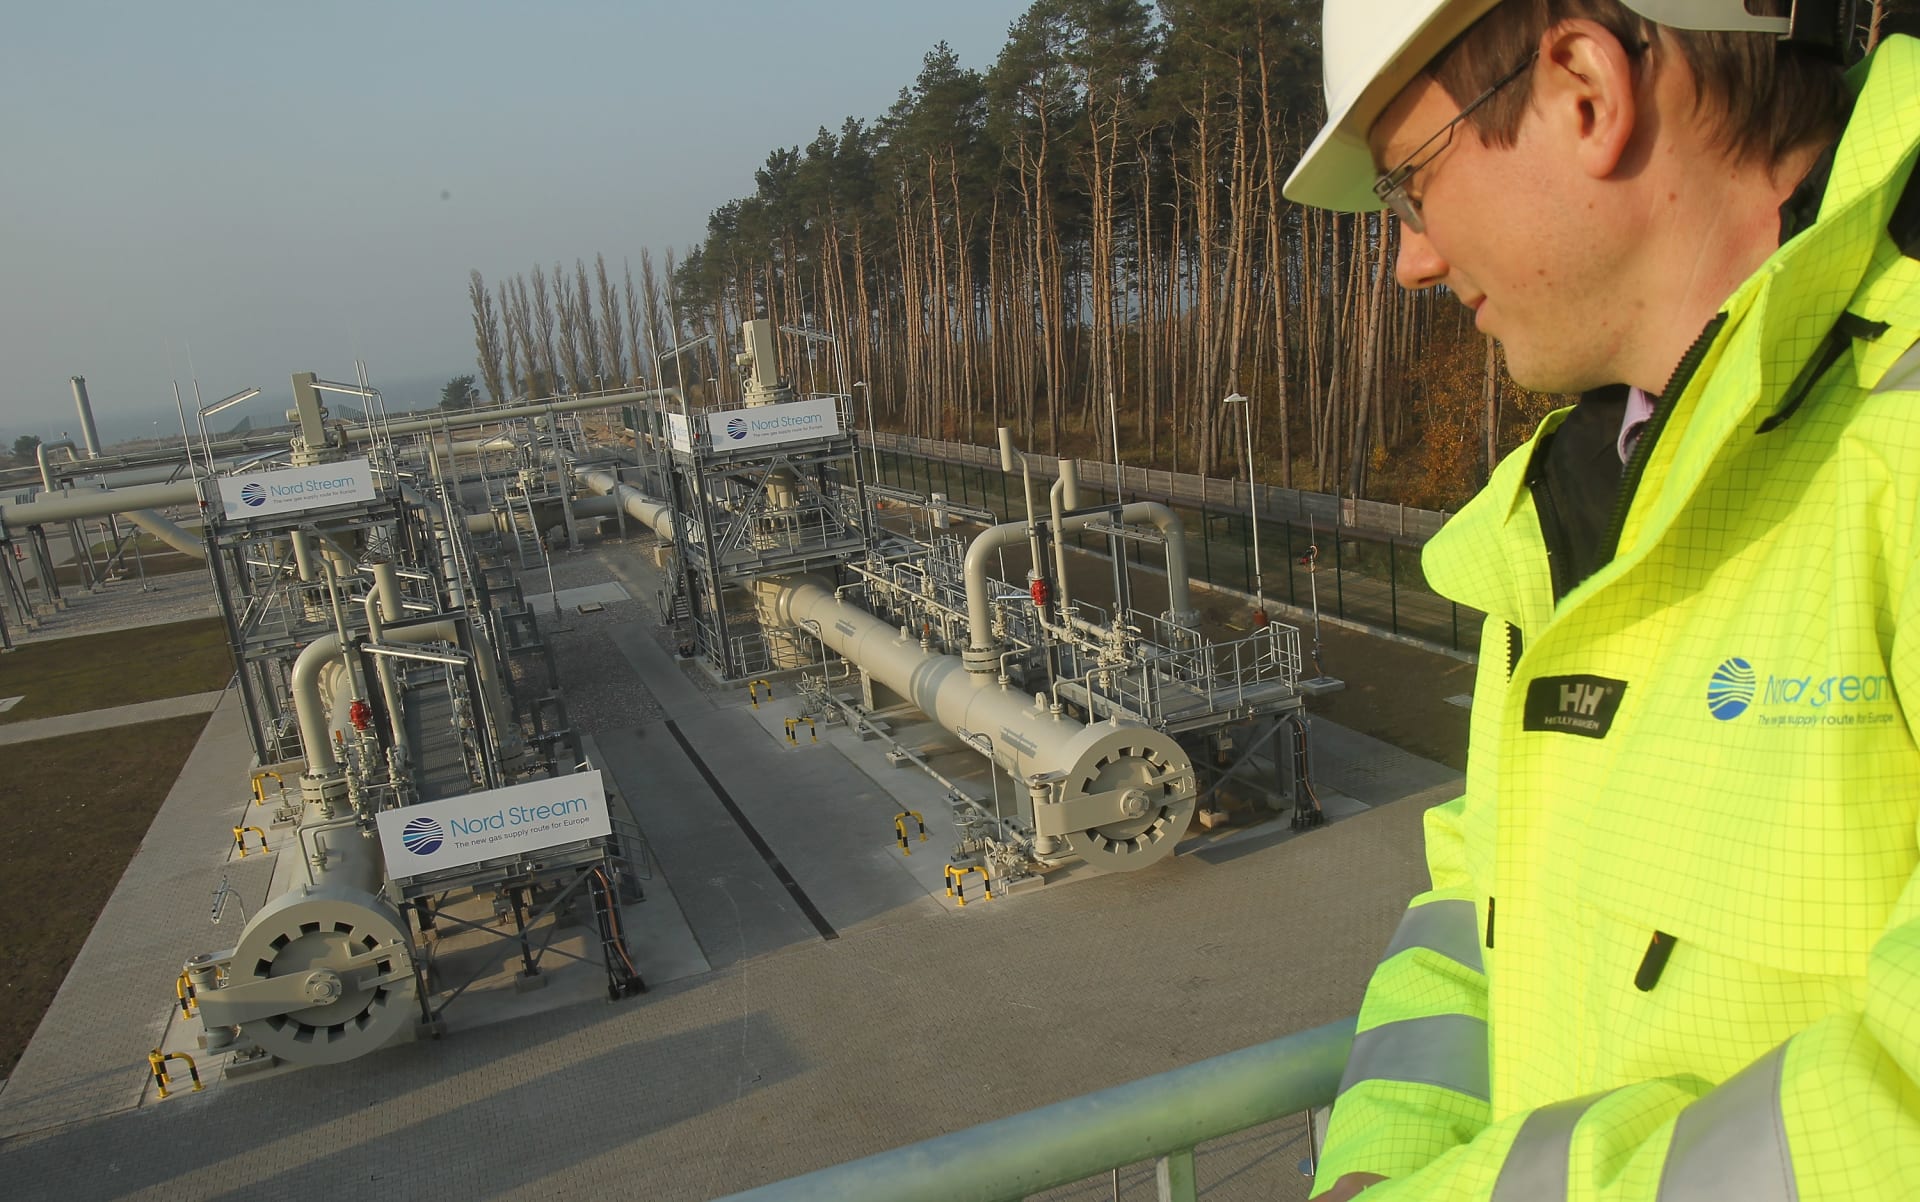 روسيا تهدد بإغلاق "نورد ستريم 1" وقطع إمدادات الغاز عن أوروبا